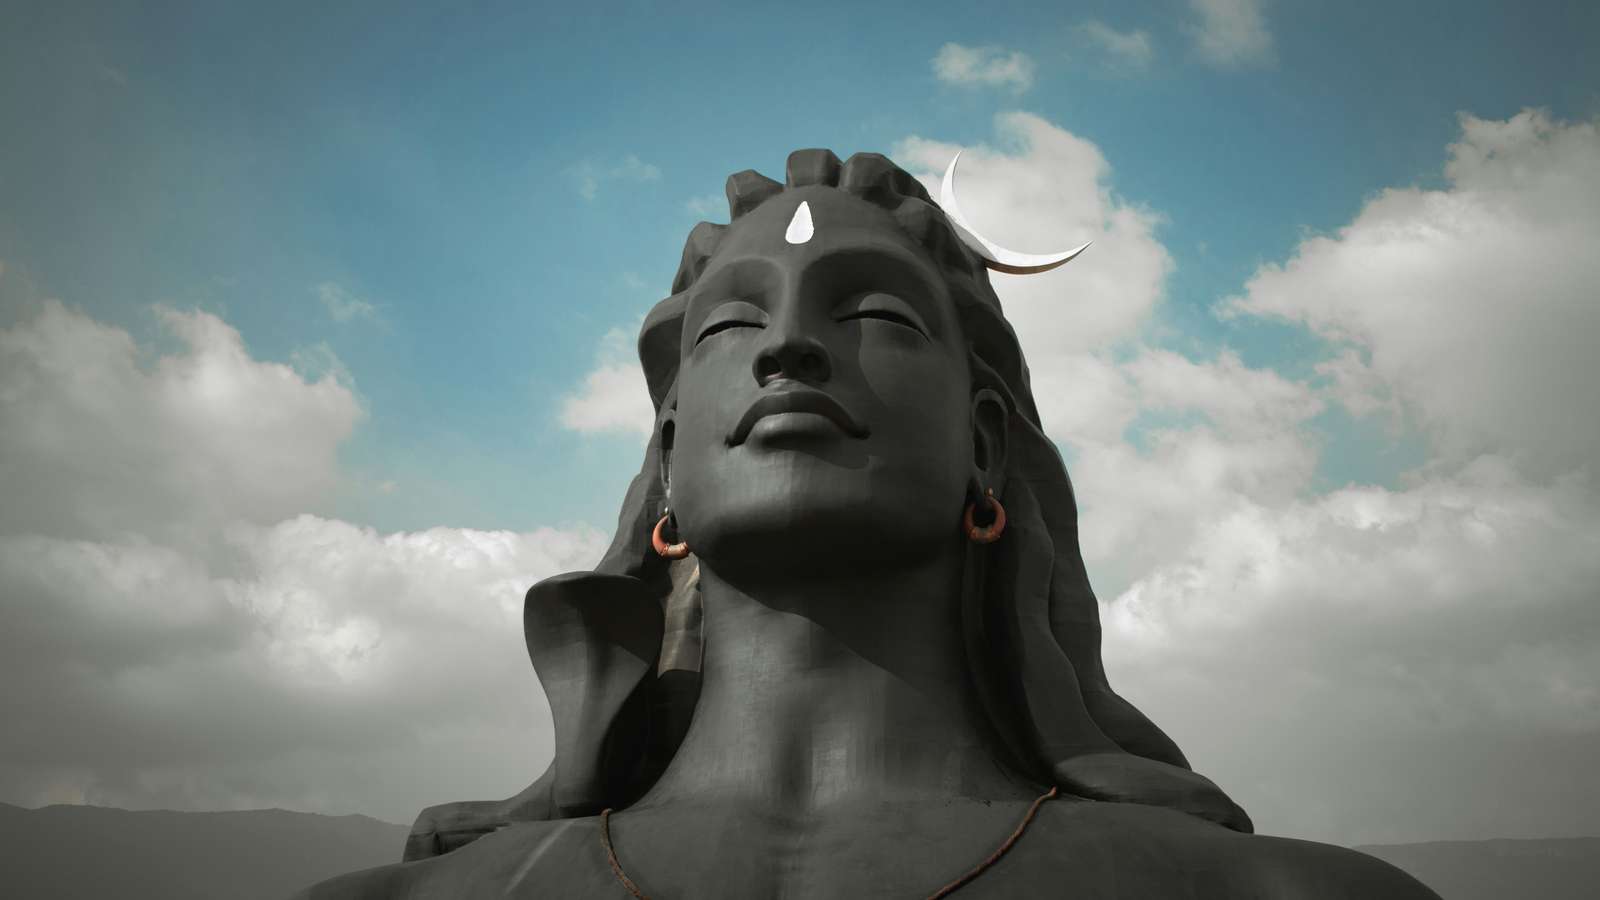 Heer Shiva online puzzel